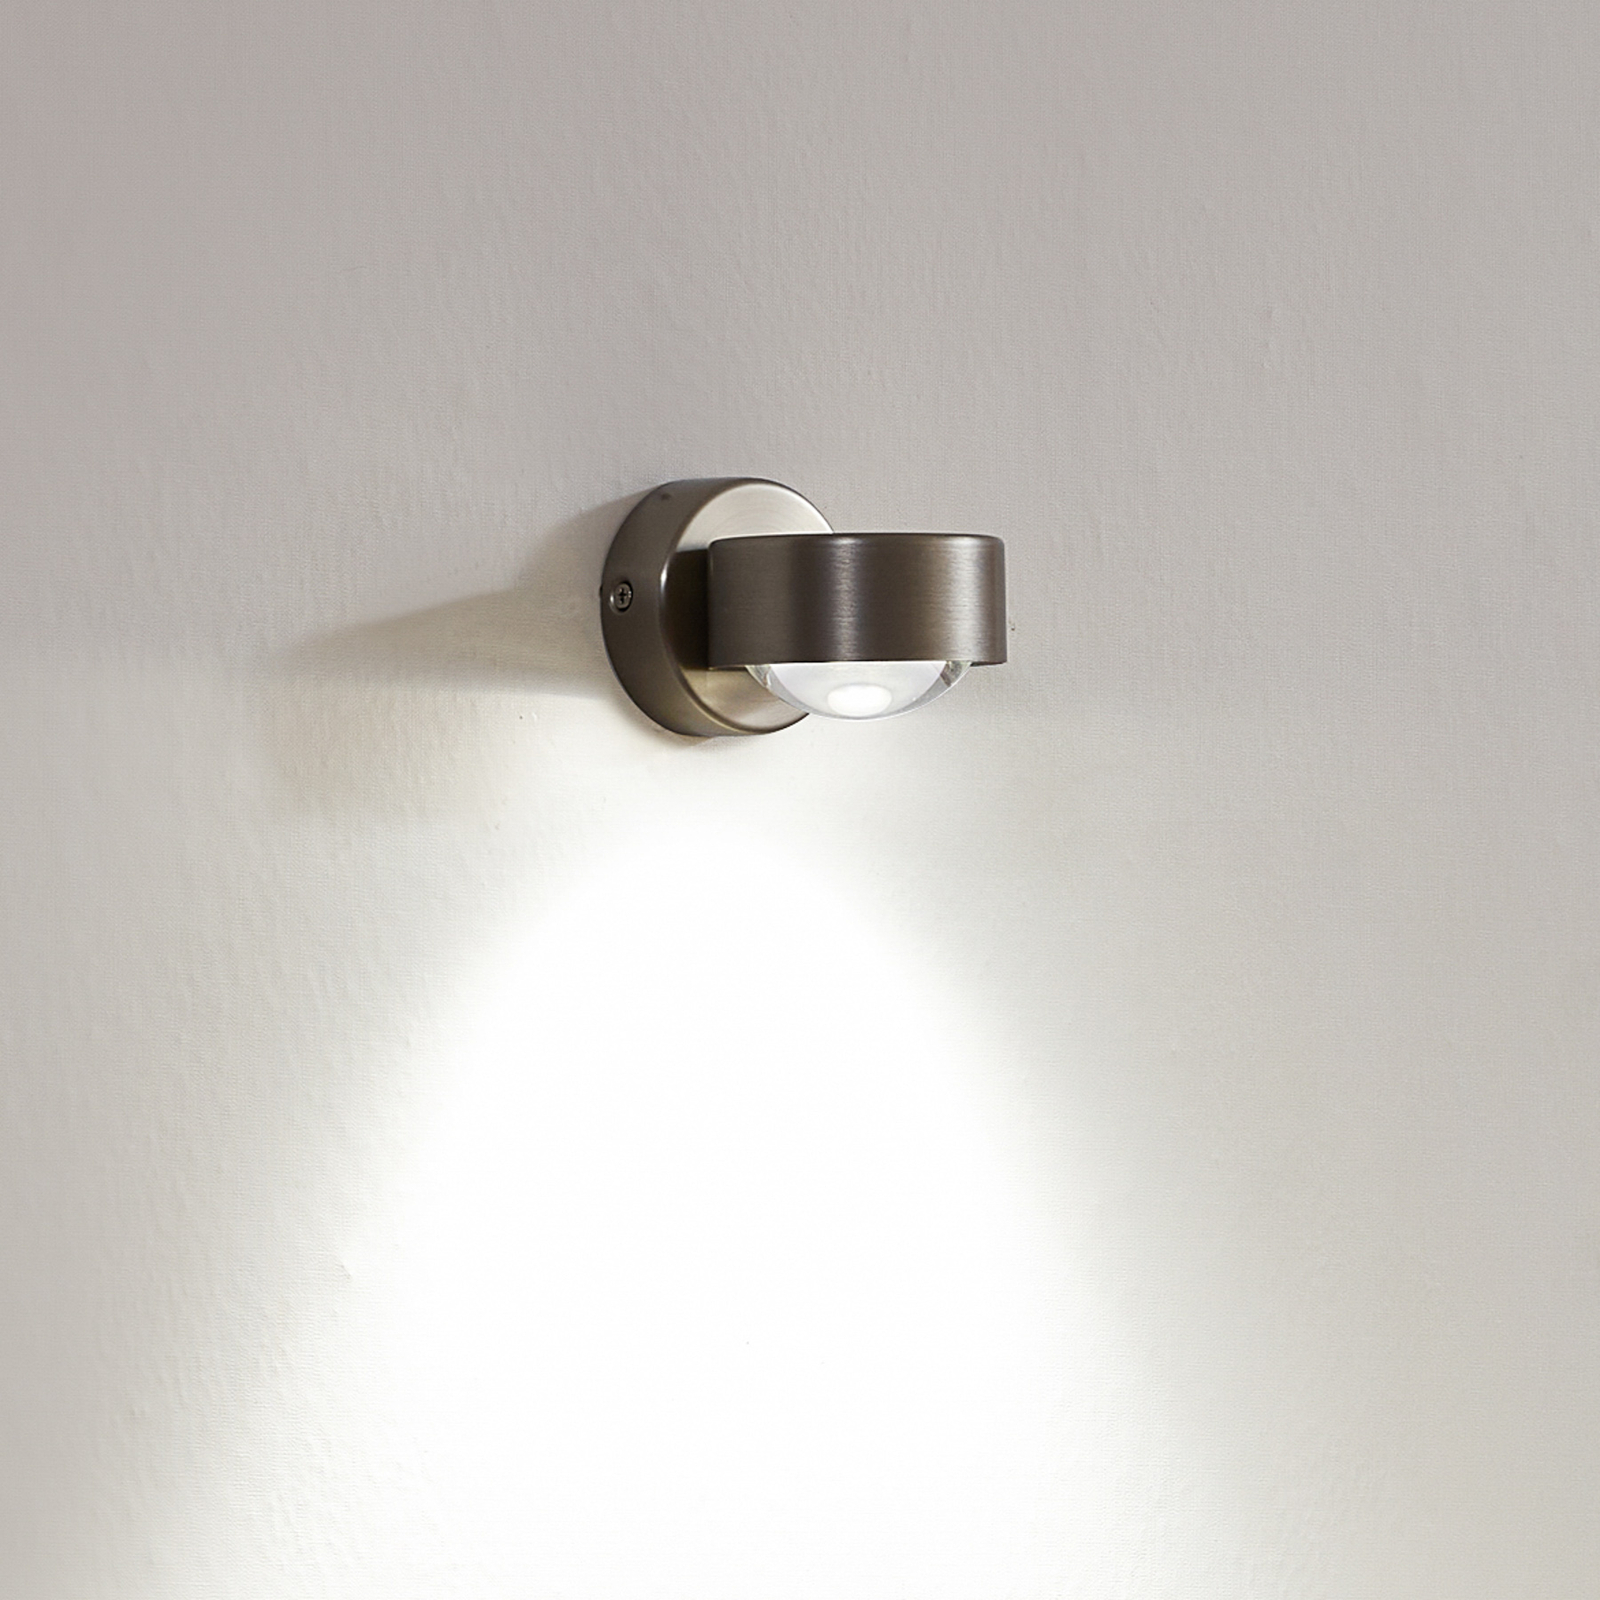 Jyla wall spotlight, nickel, 3,000 K, socket below